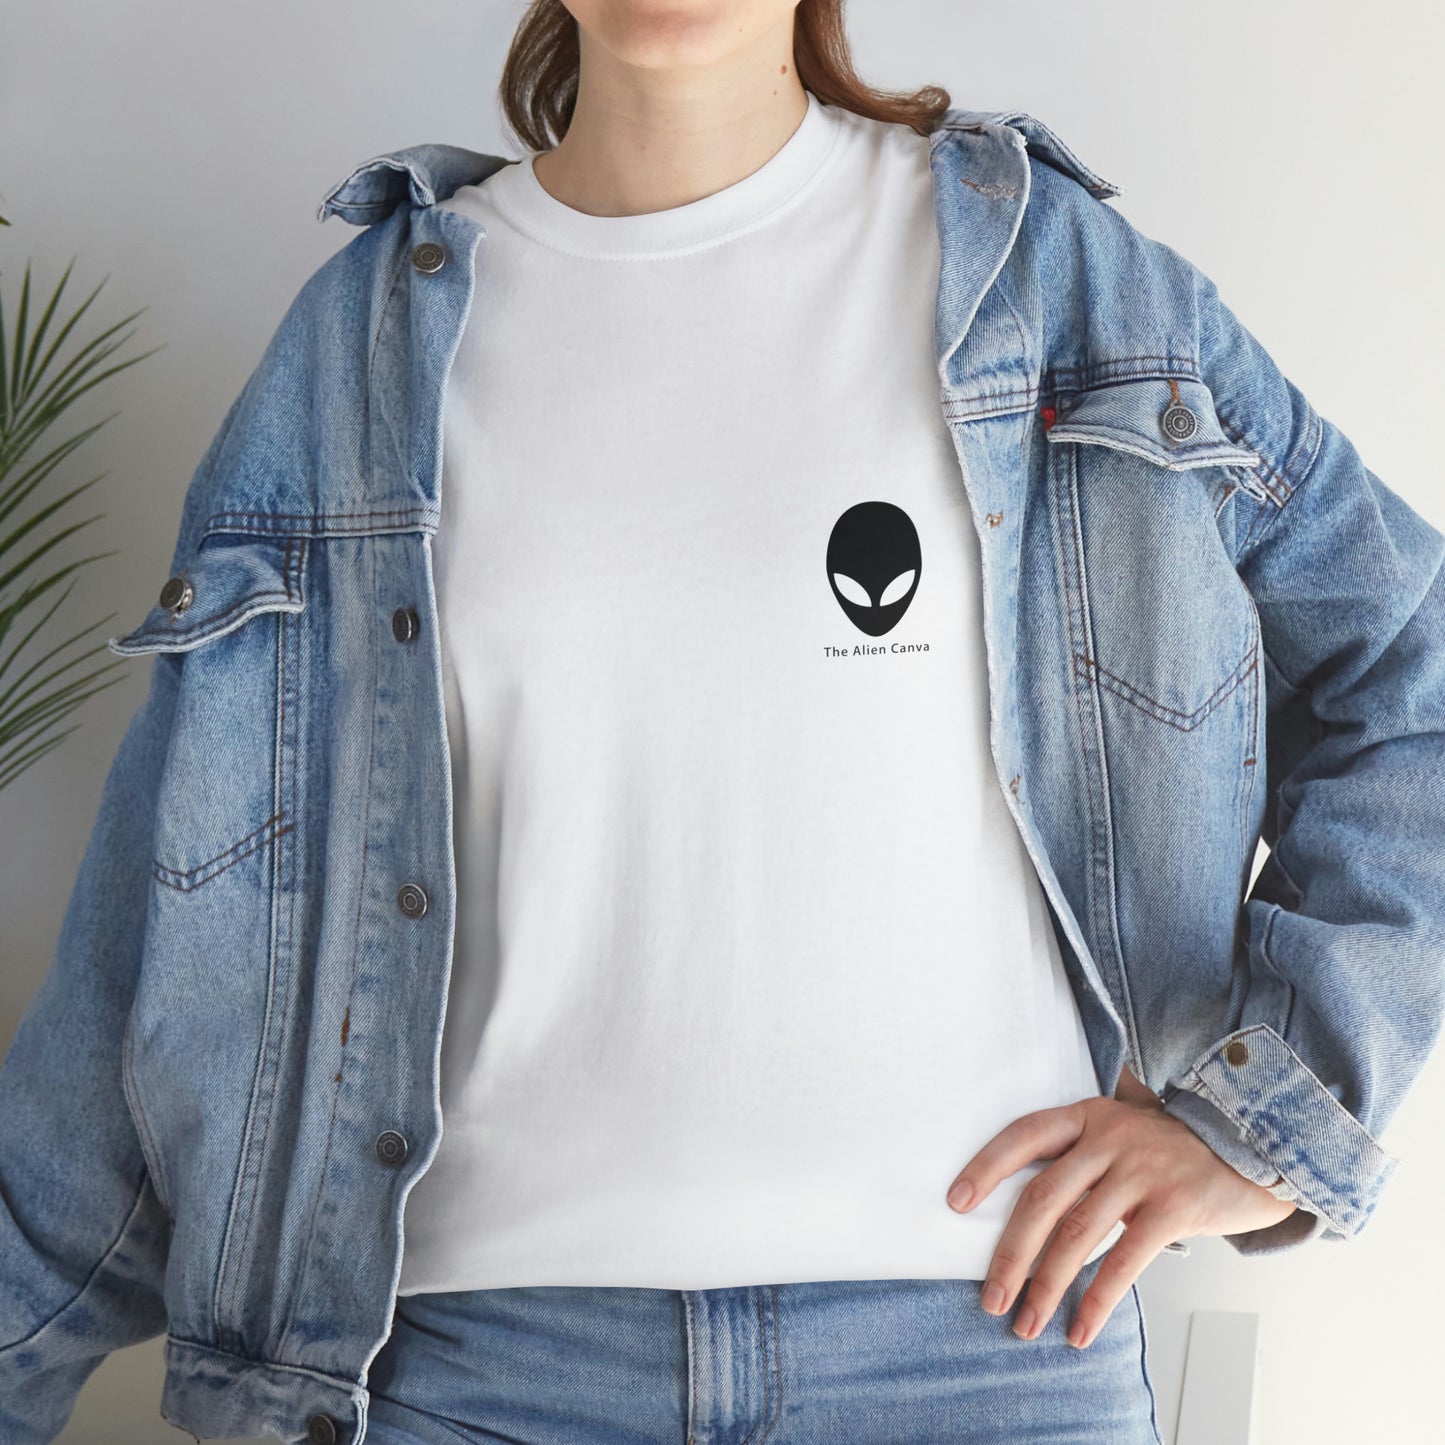 El secreto robado del zorro - La camiseta alienígena